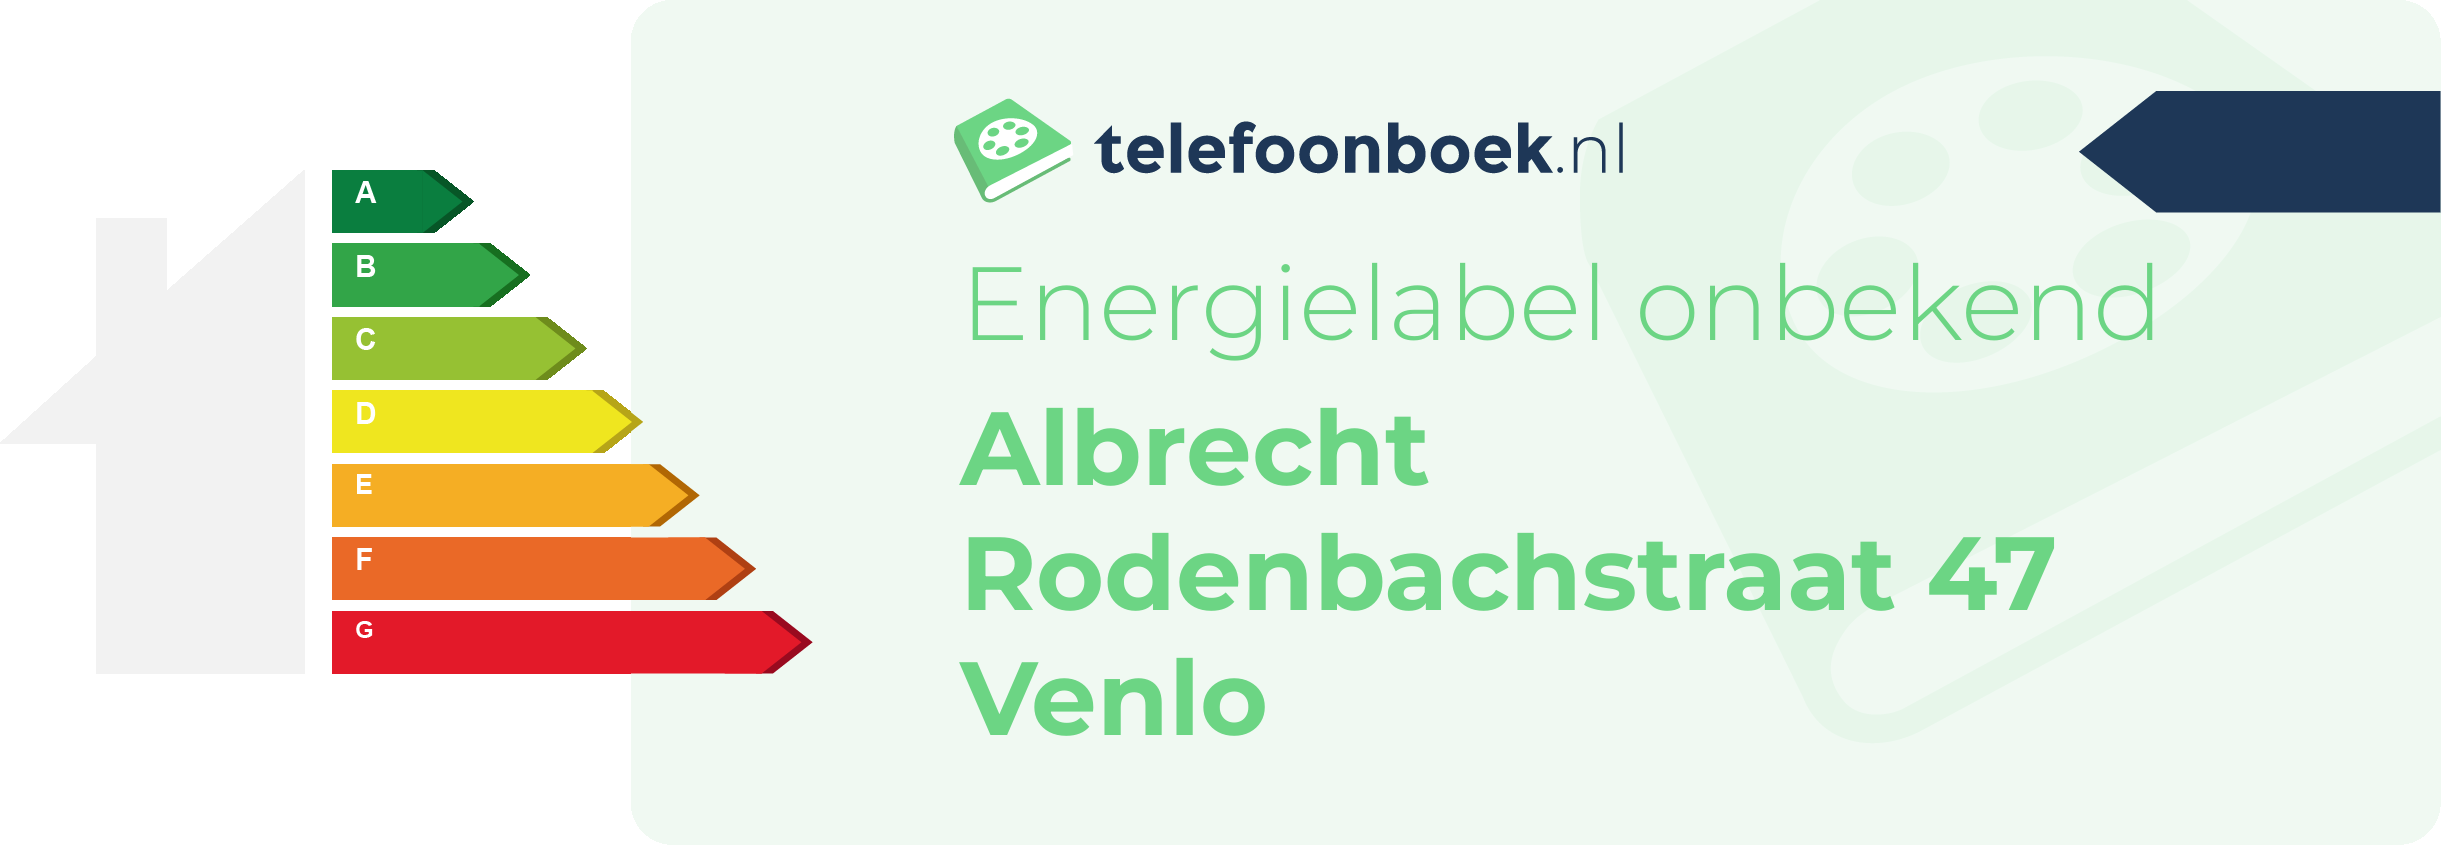 Energielabel Albrecht Rodenbachstraat 47 Venlo